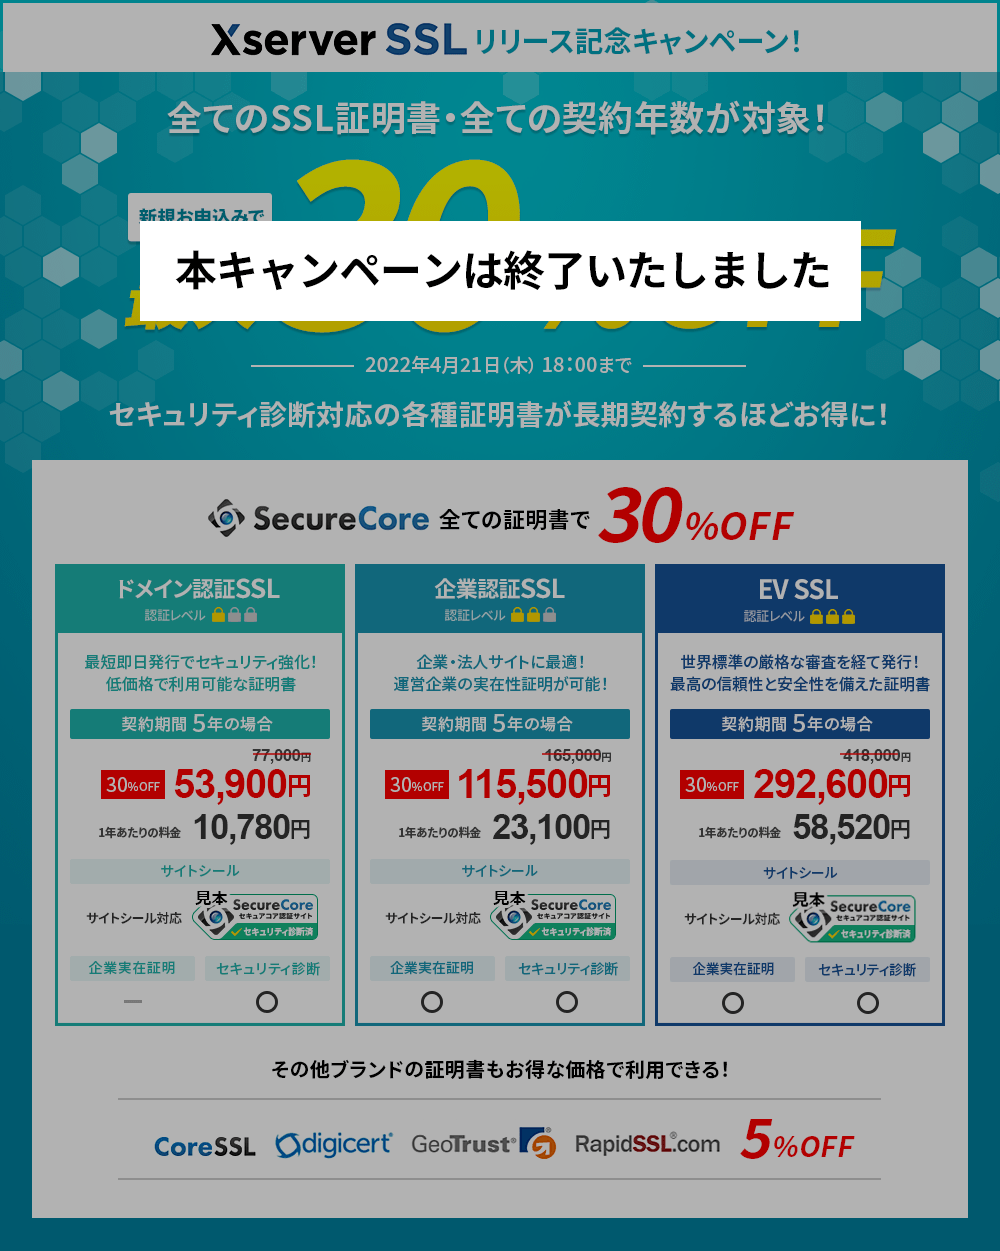 【終了いたしました】Xserver SSL リリース記念キャンペーン＜2021年11月17日(水) 12:00〜2022年4月21日(木) 18:00まで＞